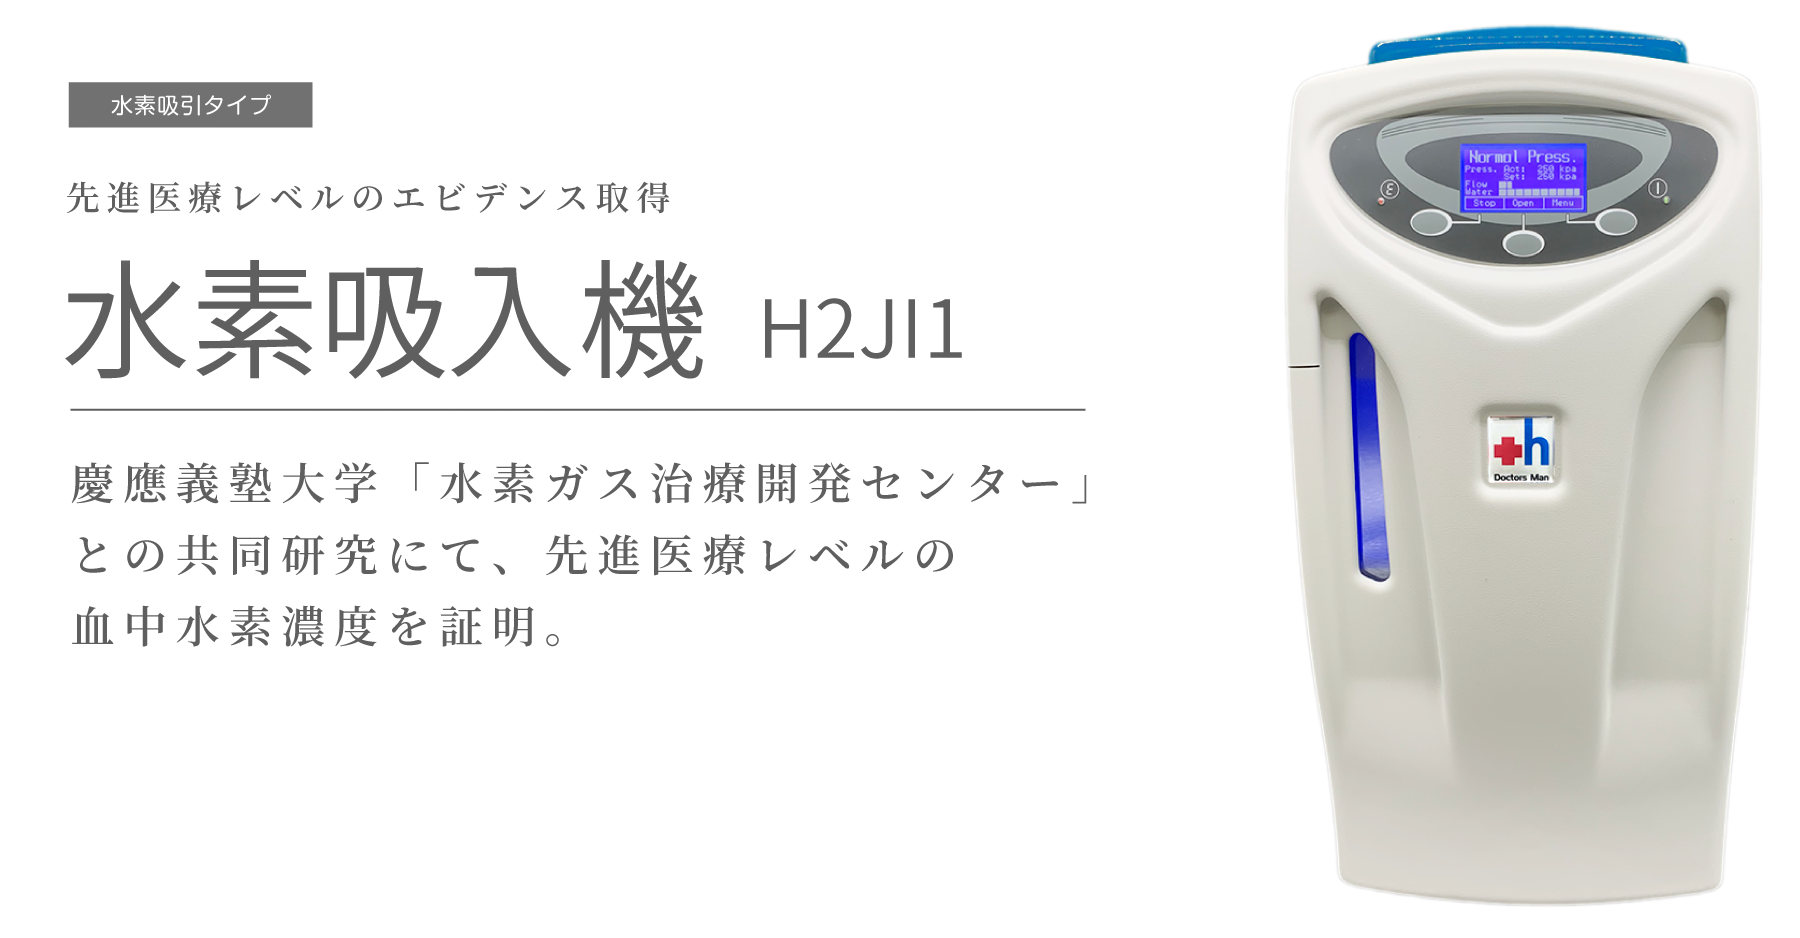 水素吸引機 H2JI1 - 株式会社ドクターズ・マン